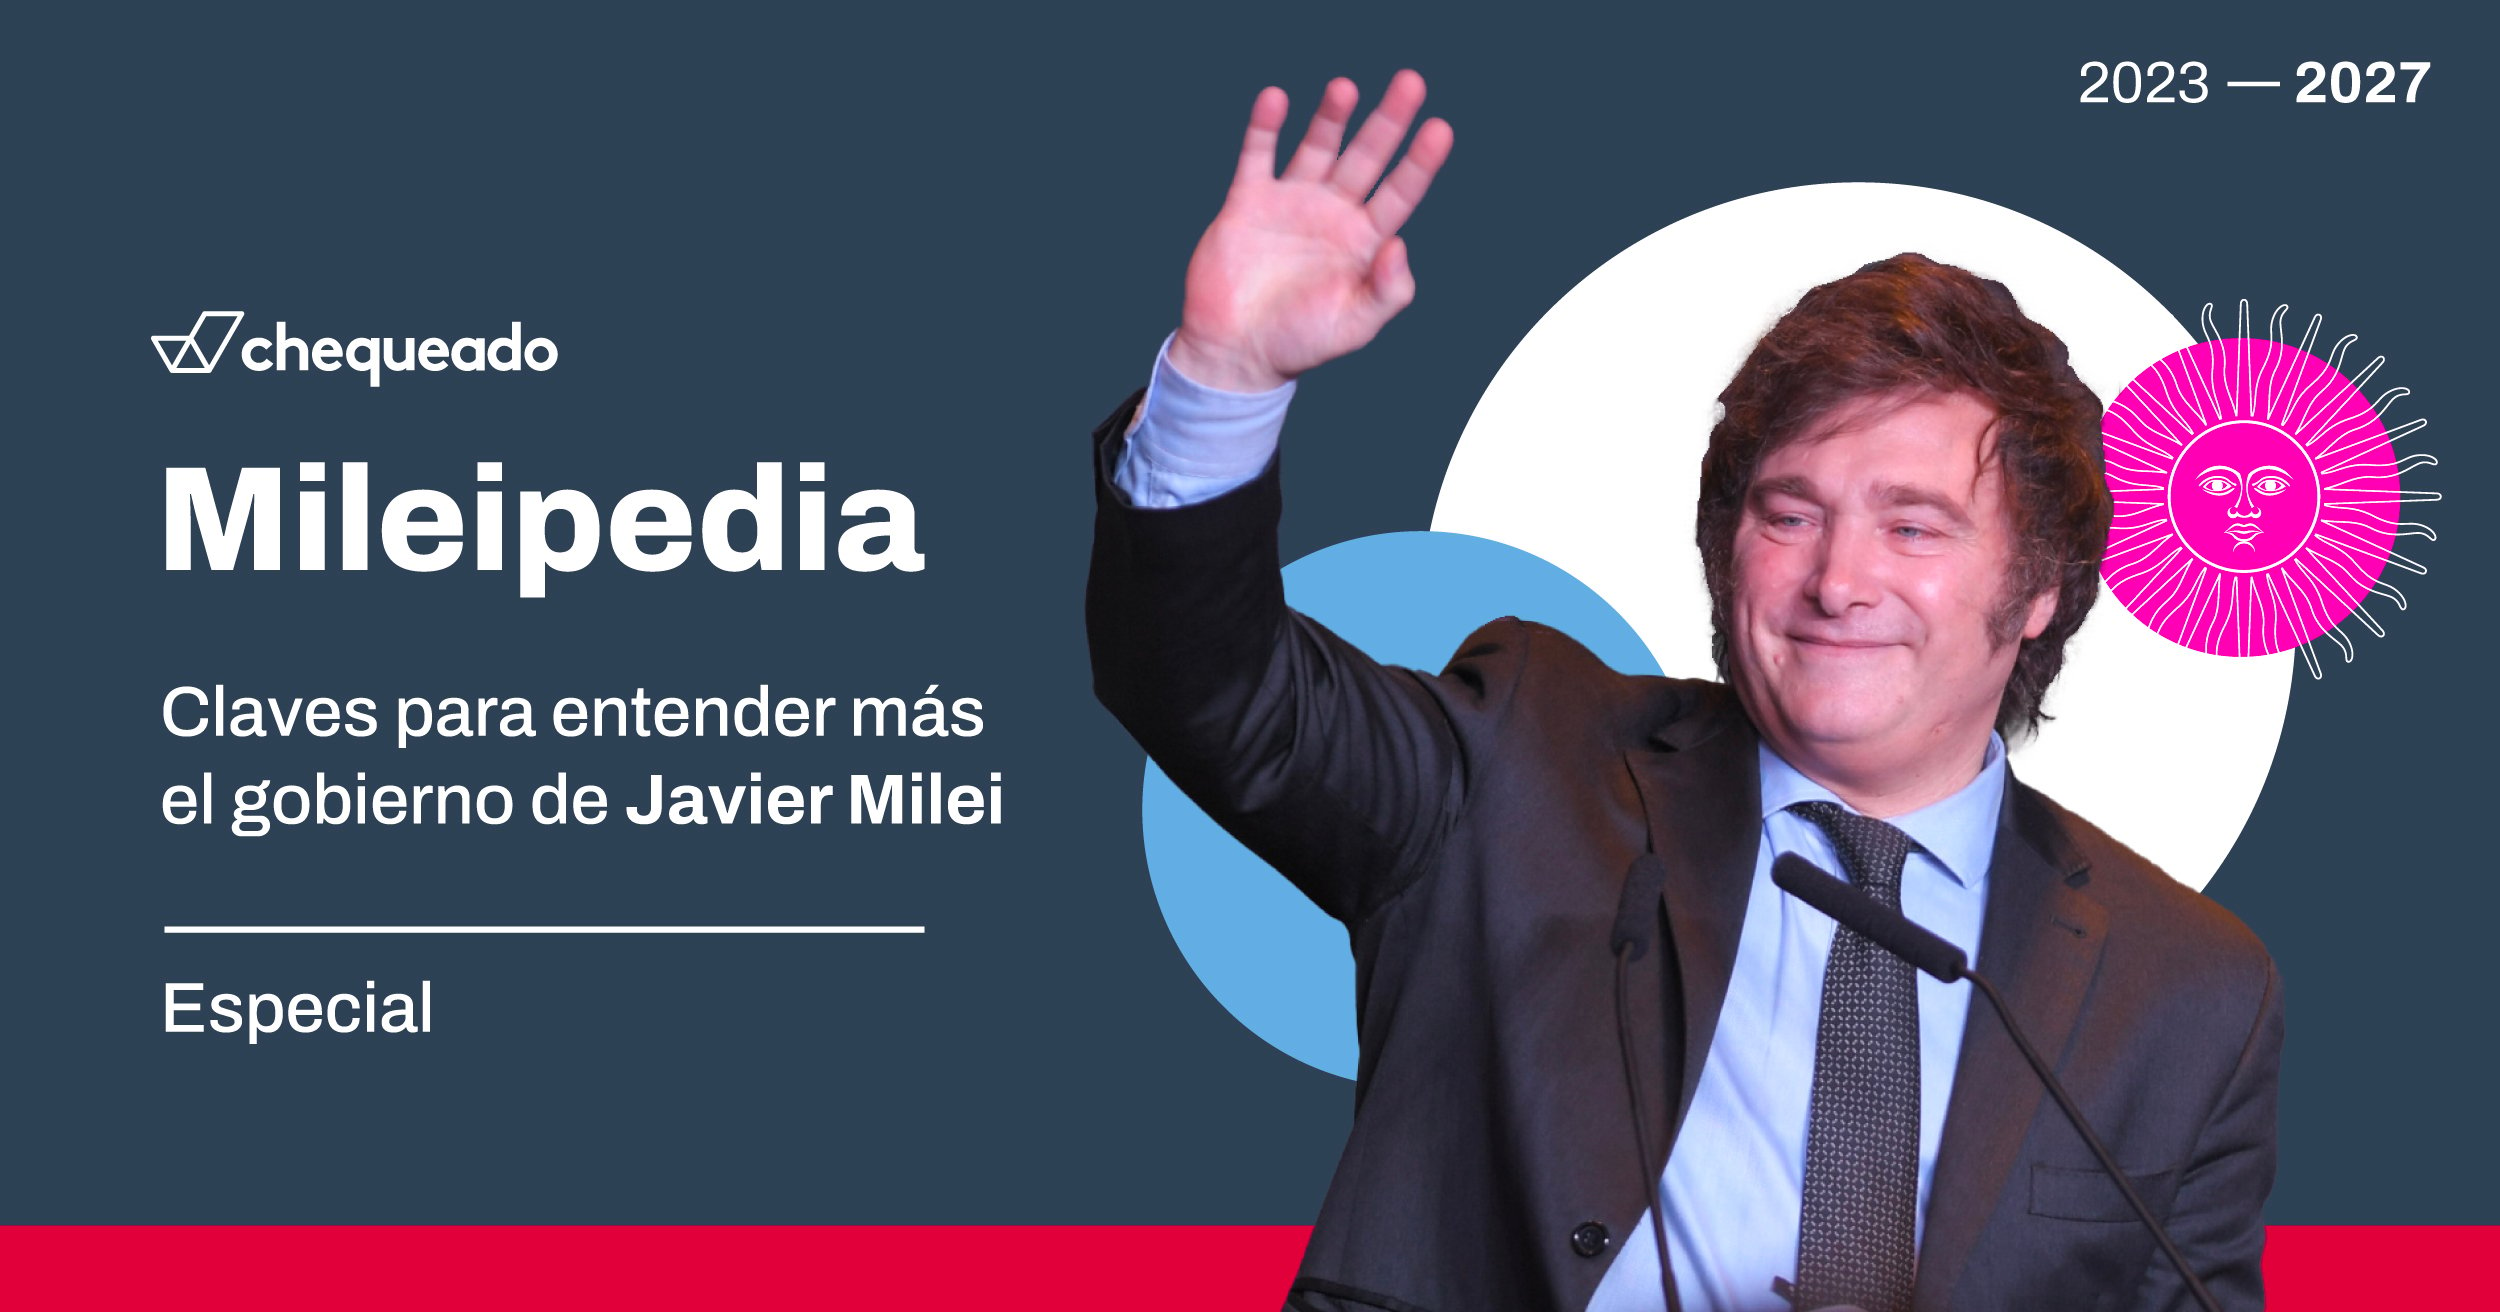 La “Mileipedia”, el nuevo producto de Chequeado para entender más el gobierno de Javier Milei